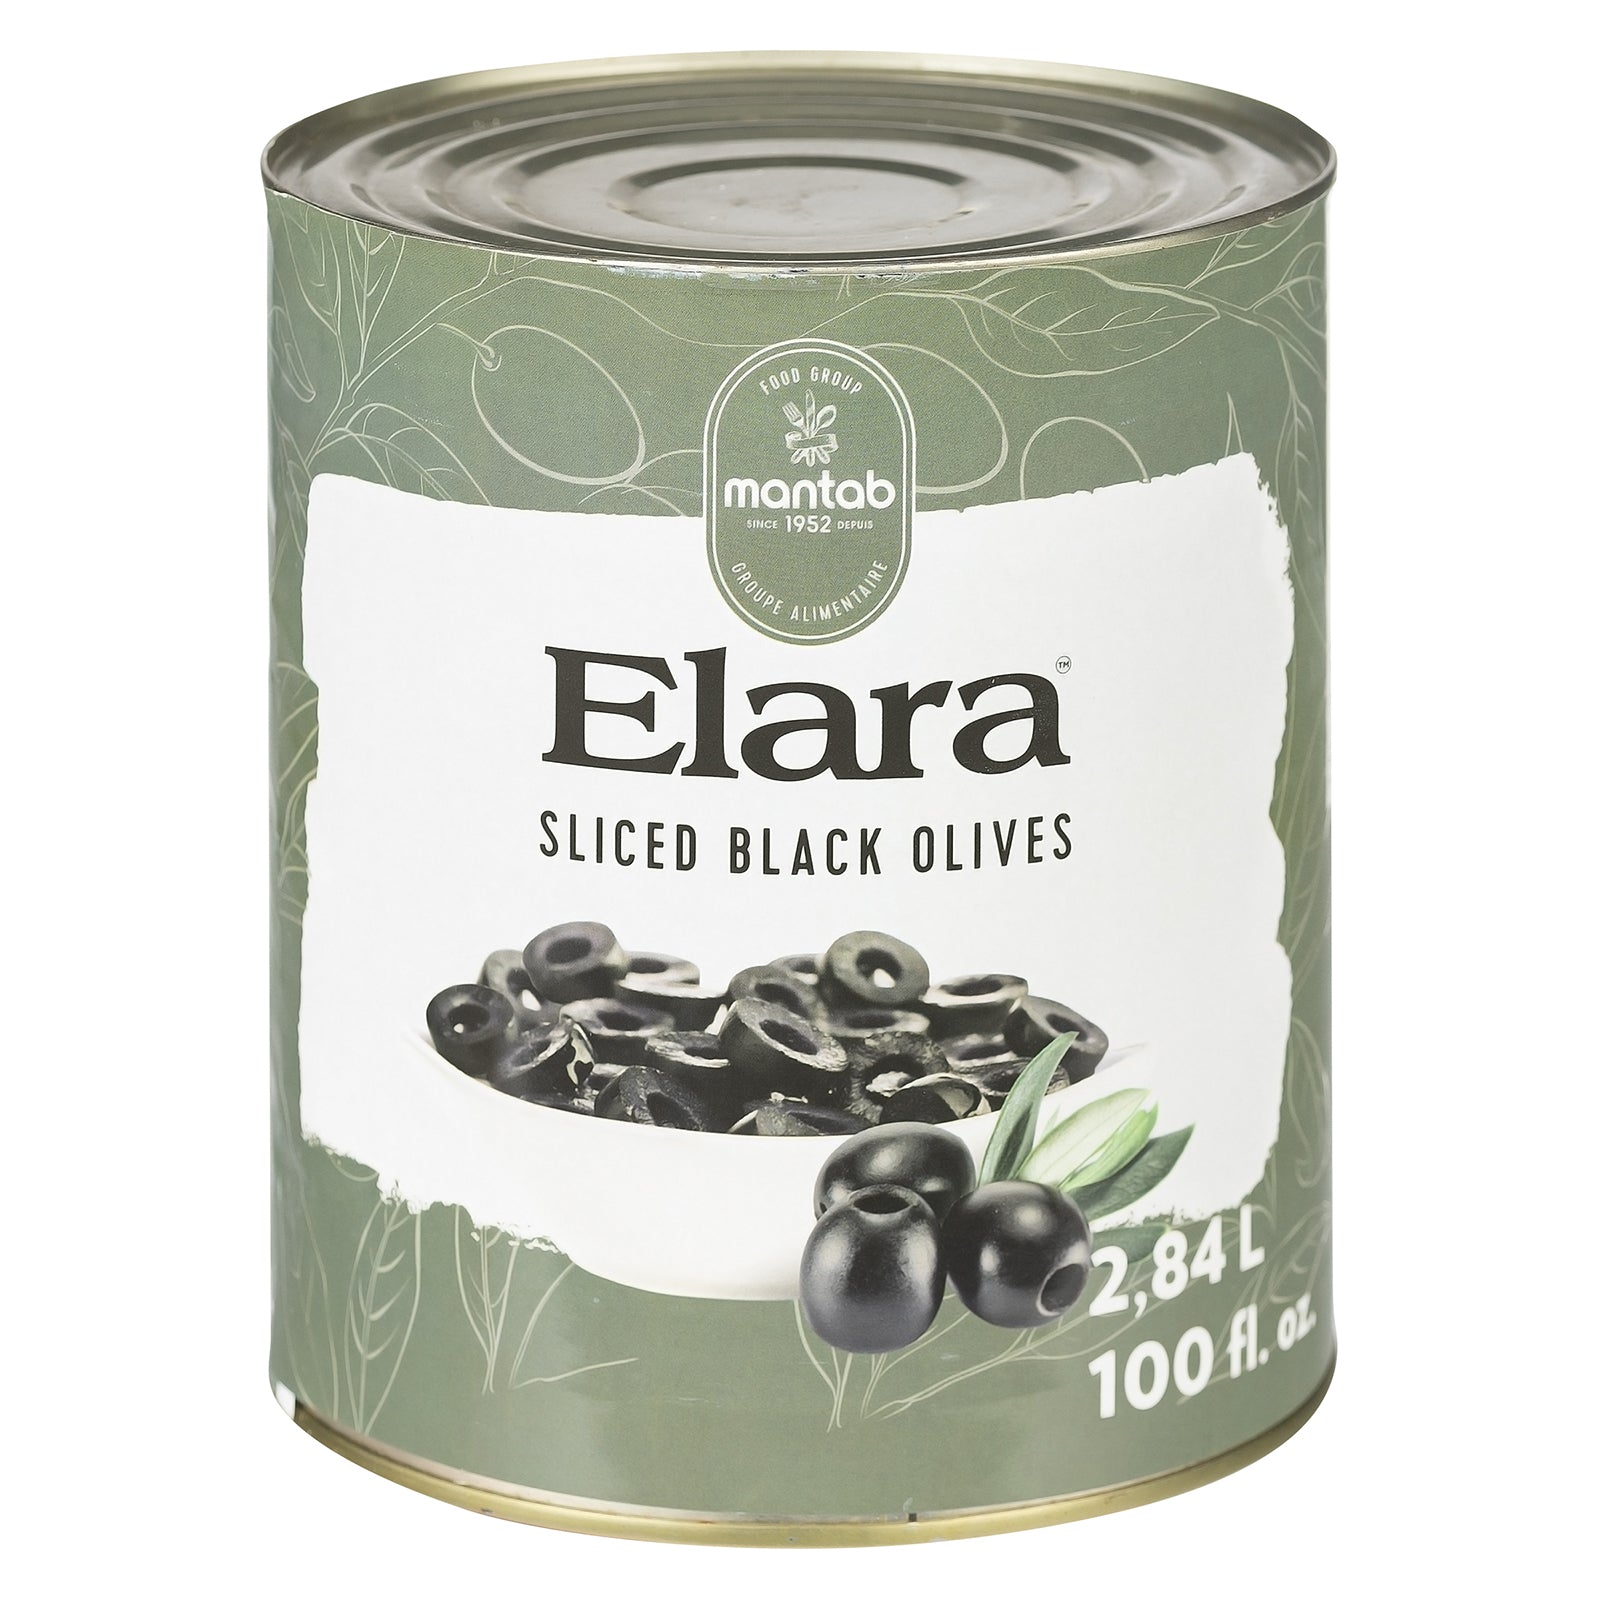 ELARA Sliced black olives